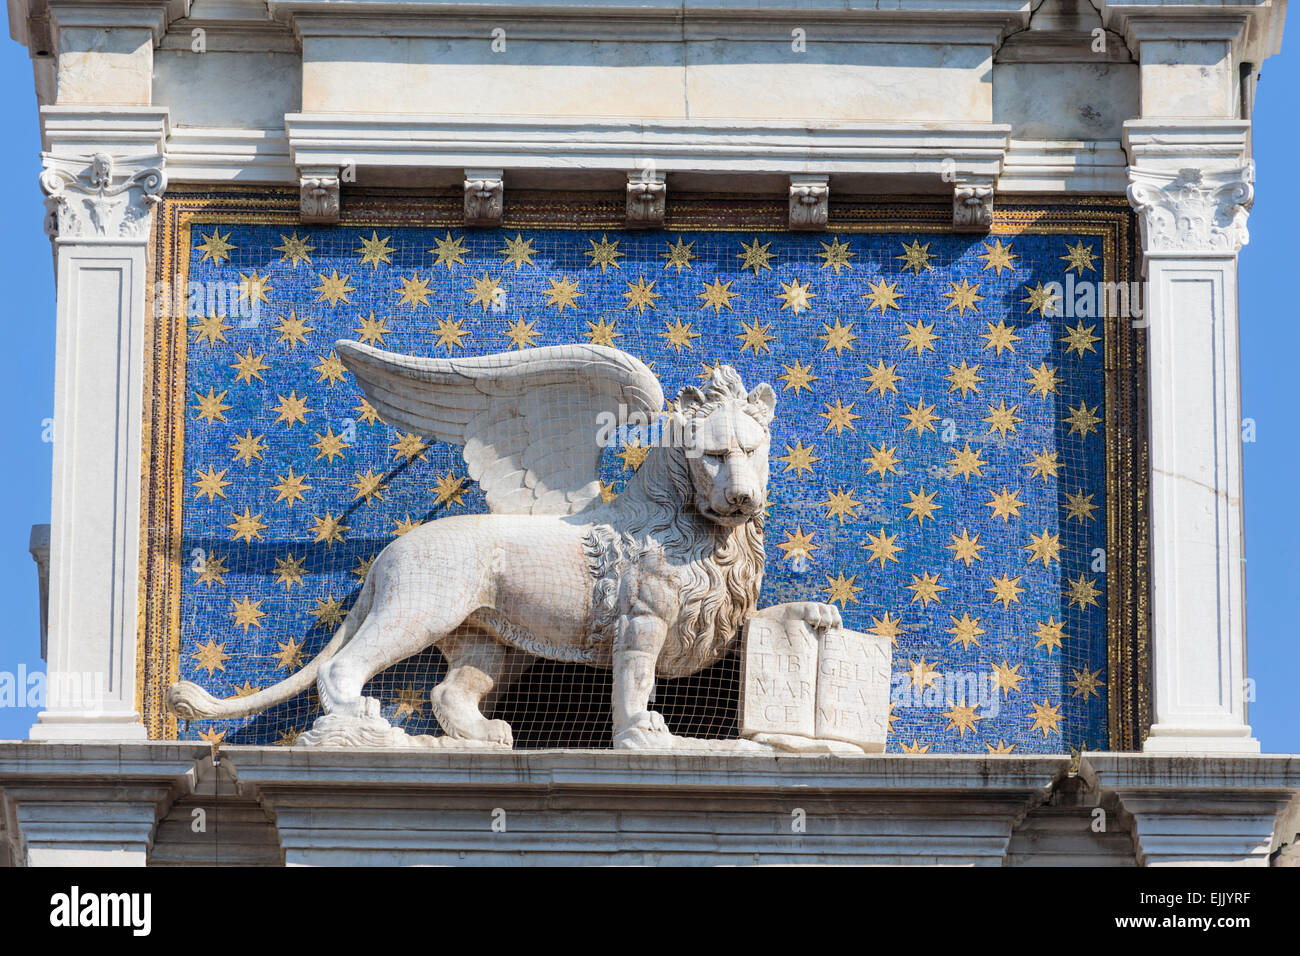 Venezia, Provincia di Venezia, Veneto, Italia. Il leone alato con il libro è un simbolo iconico di Venezia. Questo è sulla torre d Foto Stock